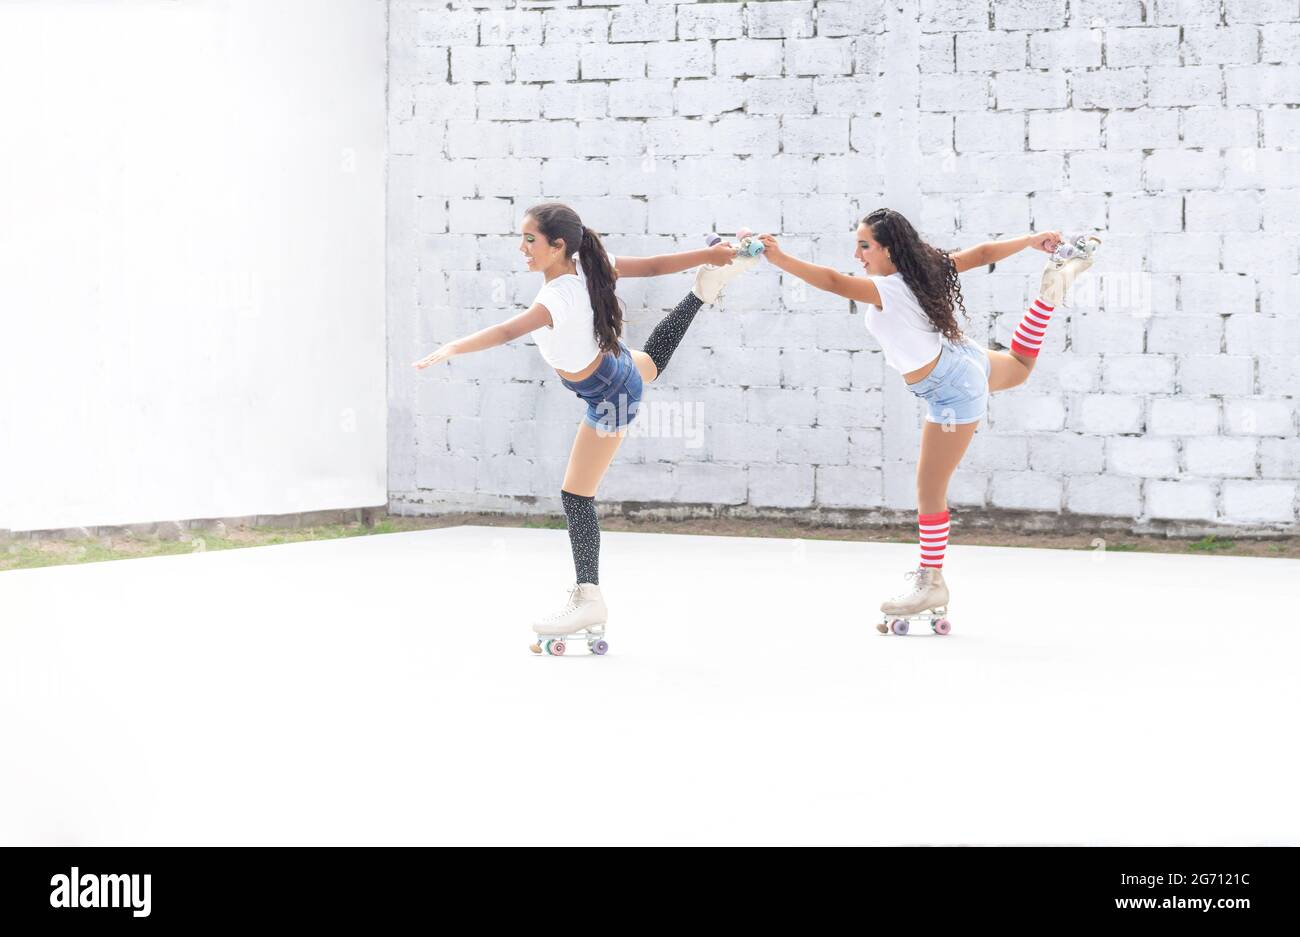 Deux filles de Latina drôle faisant une routine de danse de patinage à roulettes Banque D'Images